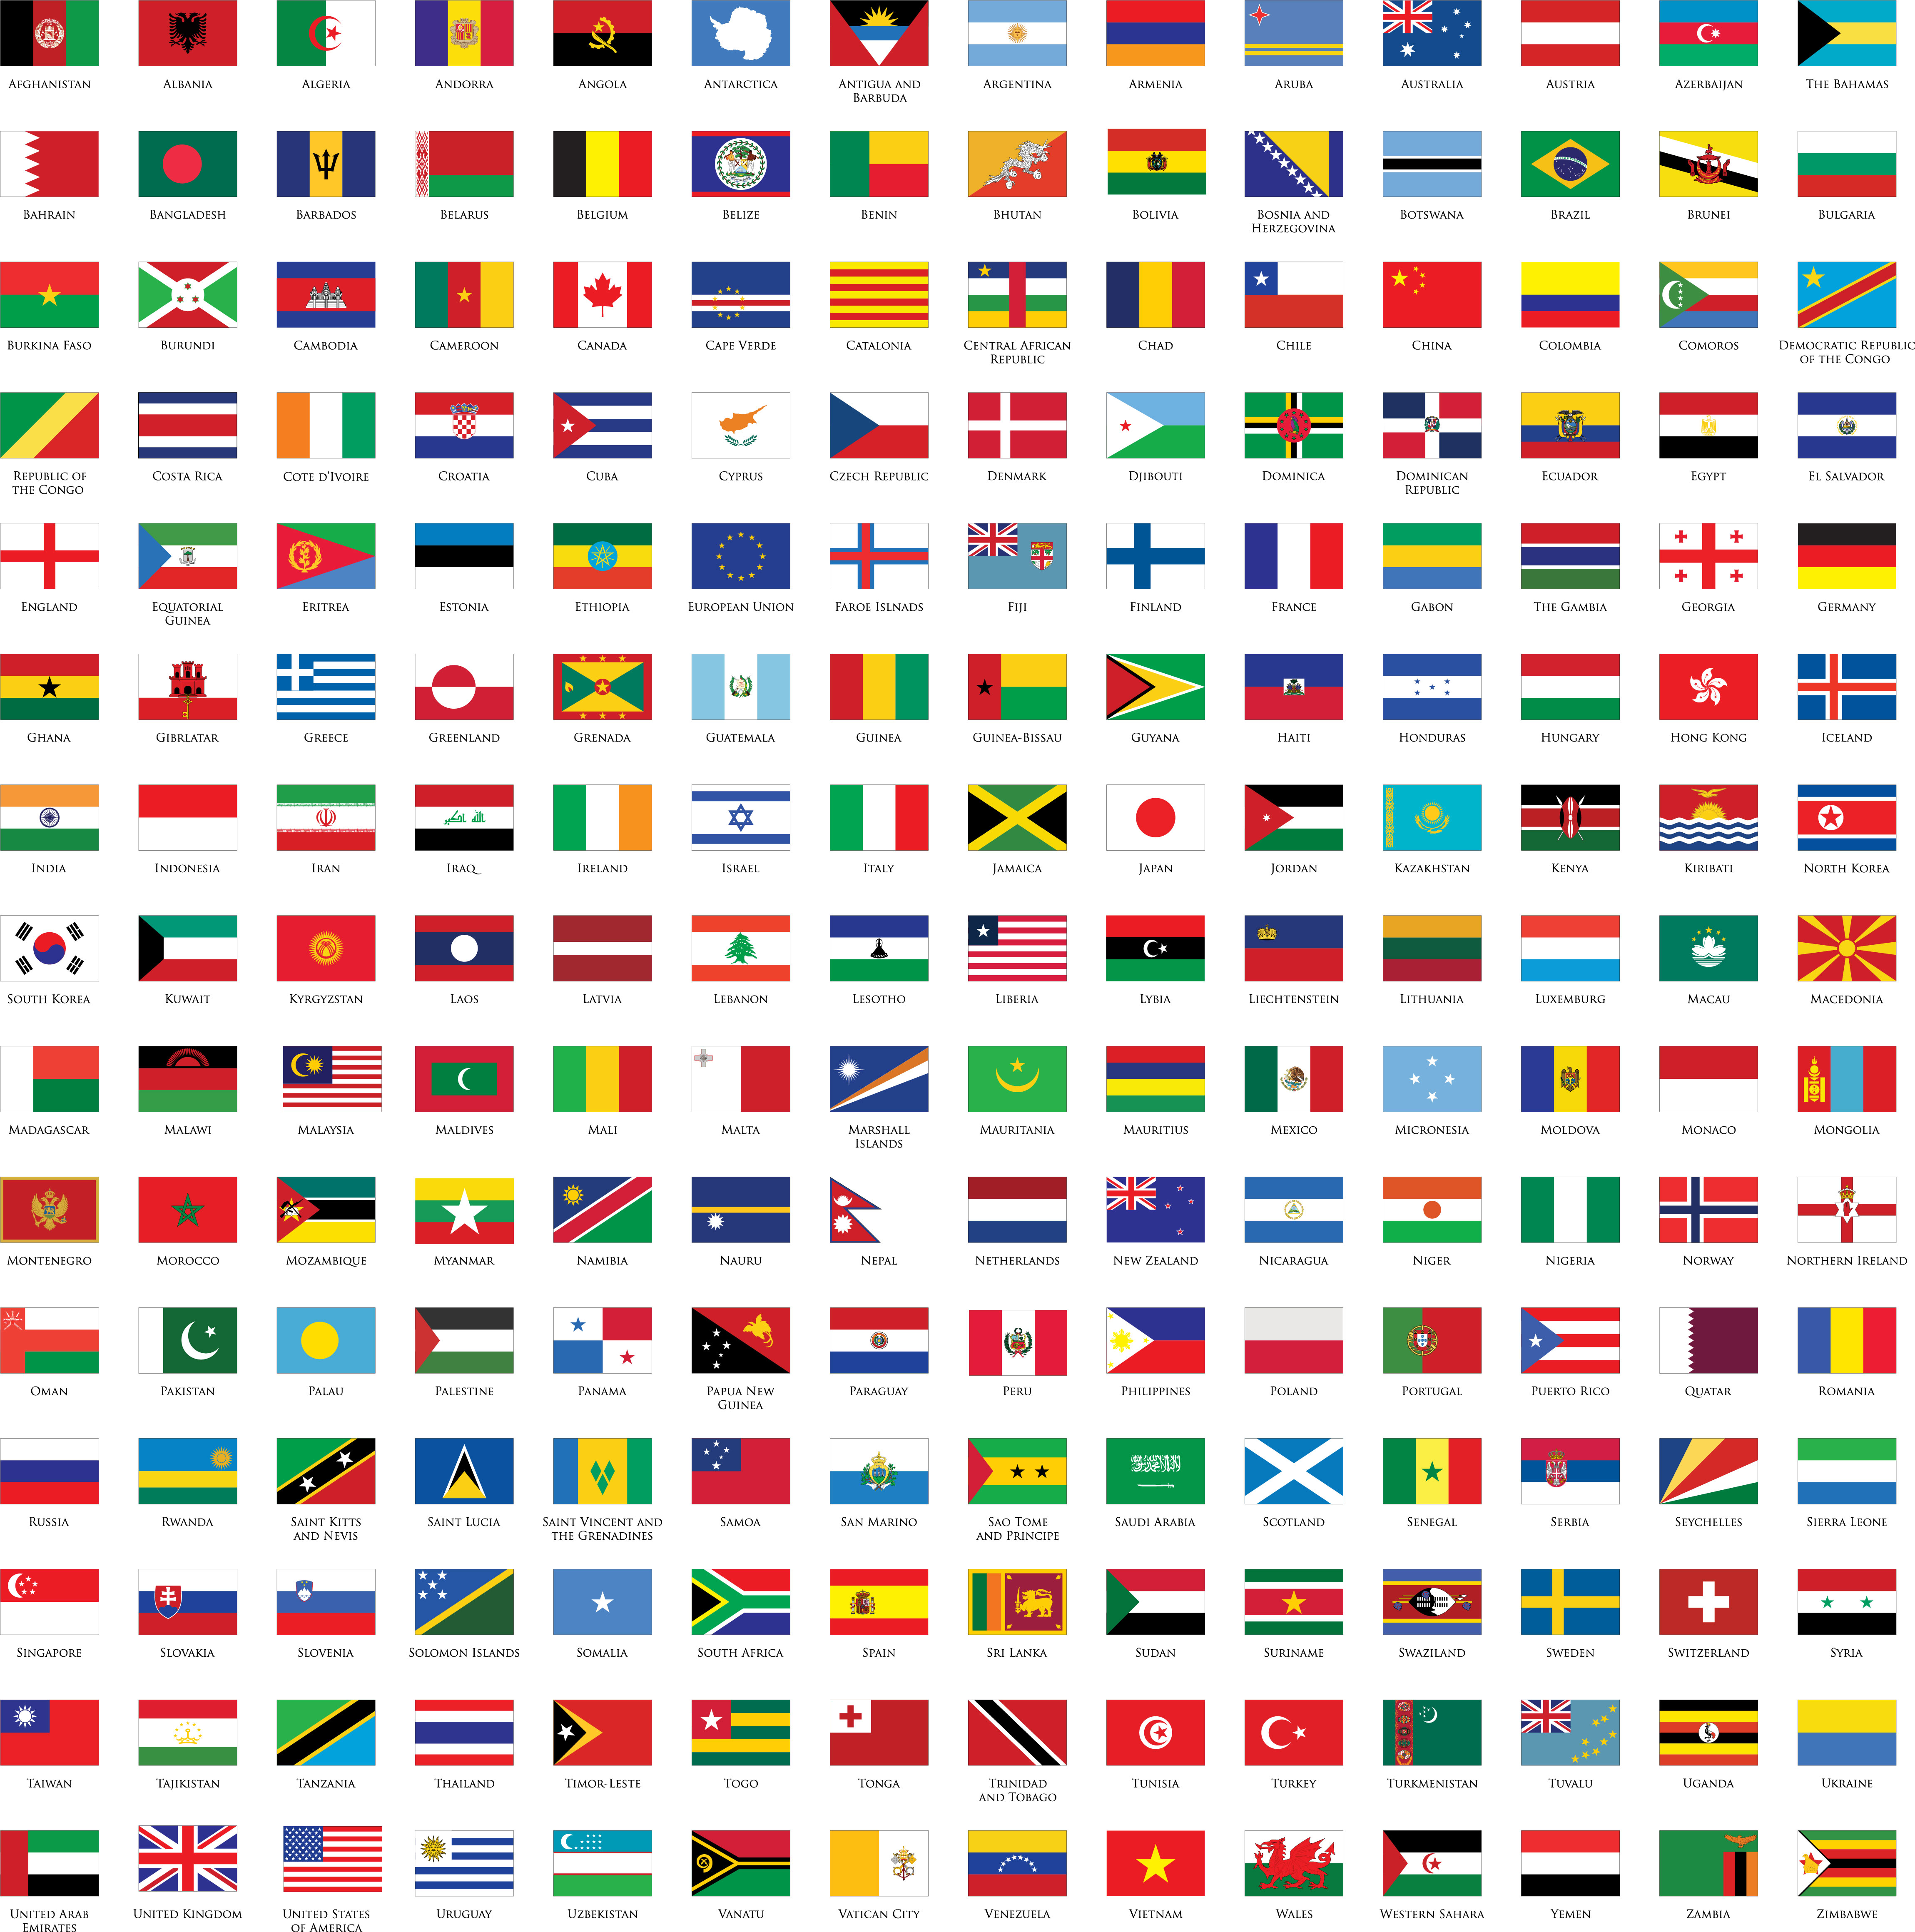 Bán cờ các nước - Bạn đang tìm kiếm một cách để trang trí phòng của mình hoặc muốn tìm hiểu về các quốc kỳ khác nhau trên thế giới? Hãy ghé thăm những cửa hàng bán cờ các nước trực tuyến để tìm kiếm những sản phẩm độc đáo và đa dạng nhất. Từ các cờ quốc kỳ phổ biến đến các cờ hiếm, bạn chắc chắn sẽ tìm được điều mình muốn.